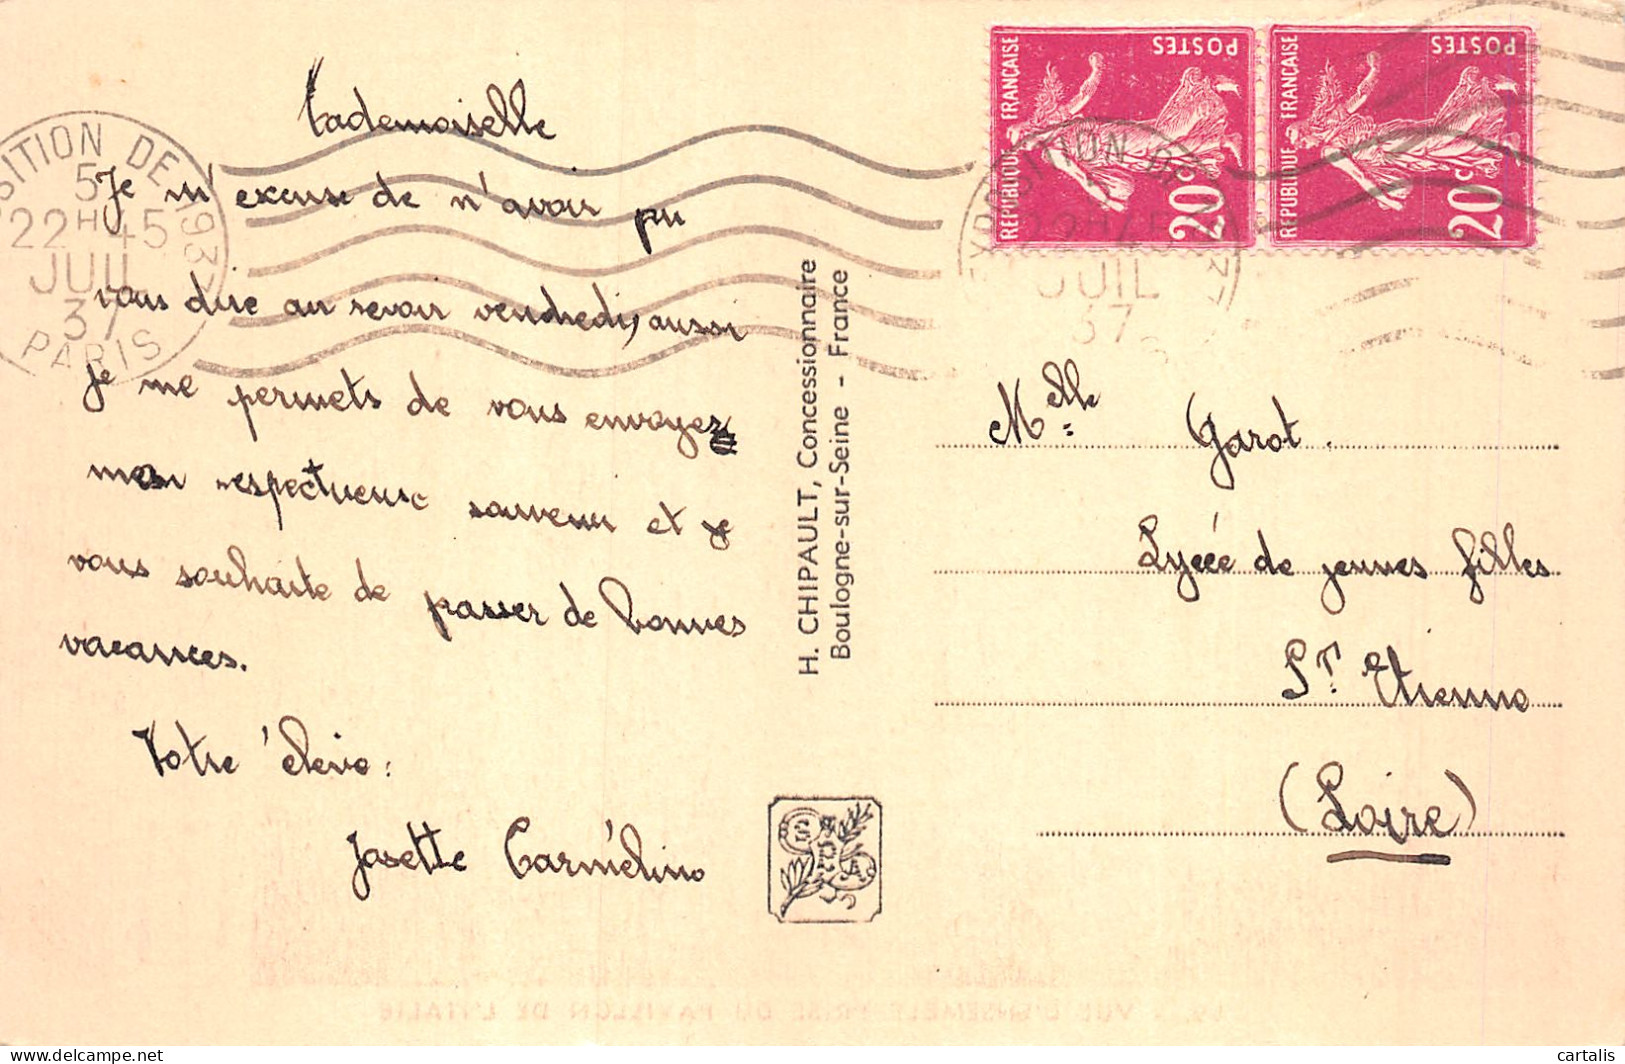 75-PARIS EXPO INTERNATIONALE PAVILLON D Italie 1937-N°4226-D/0193 - Expositions